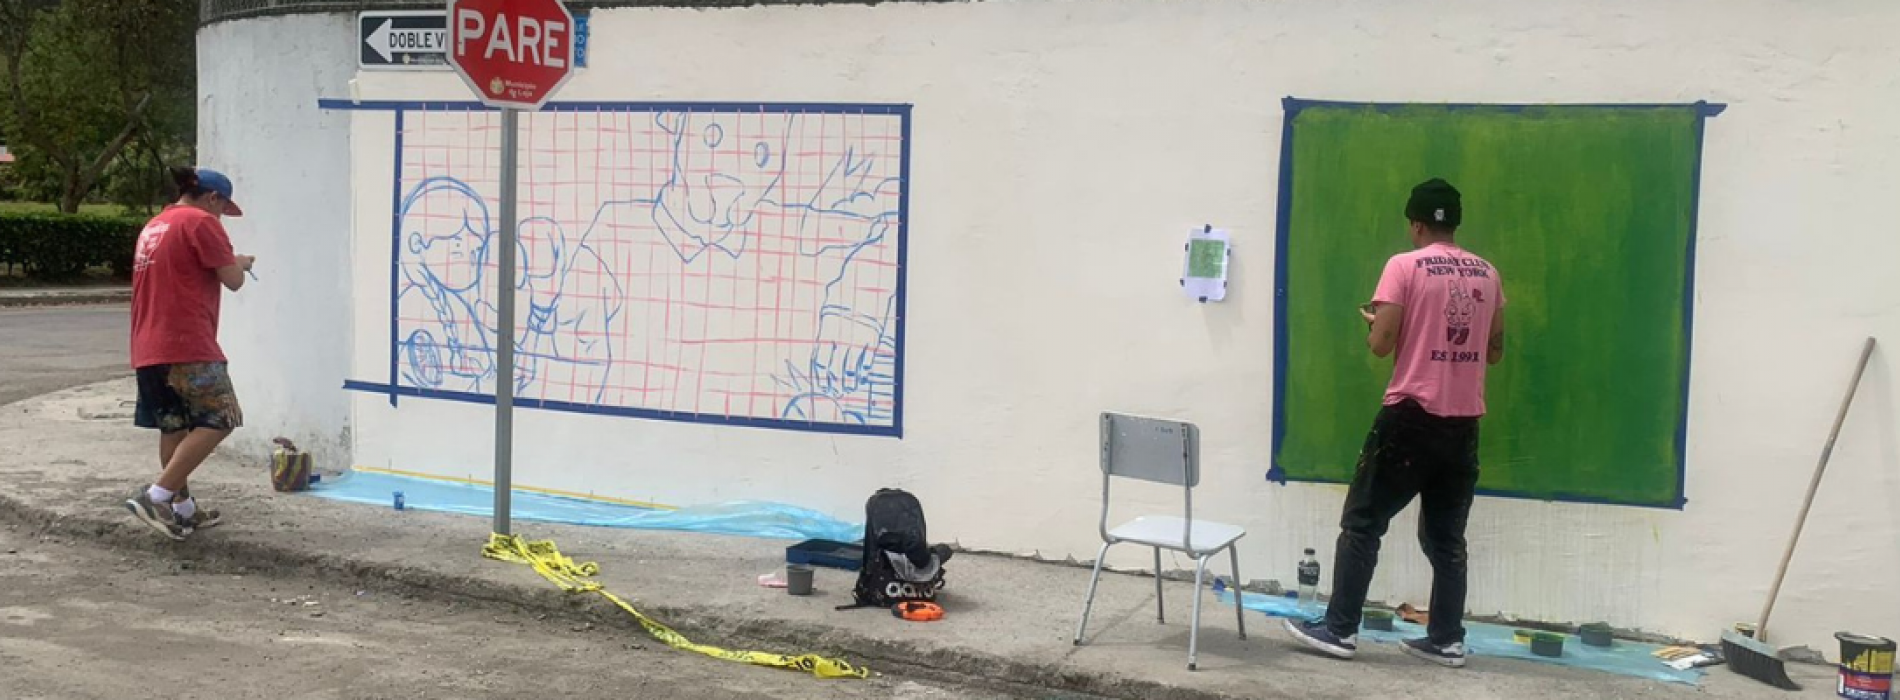 Murales: un proyecto de vinculación que busca revitalizar los espacios públicos